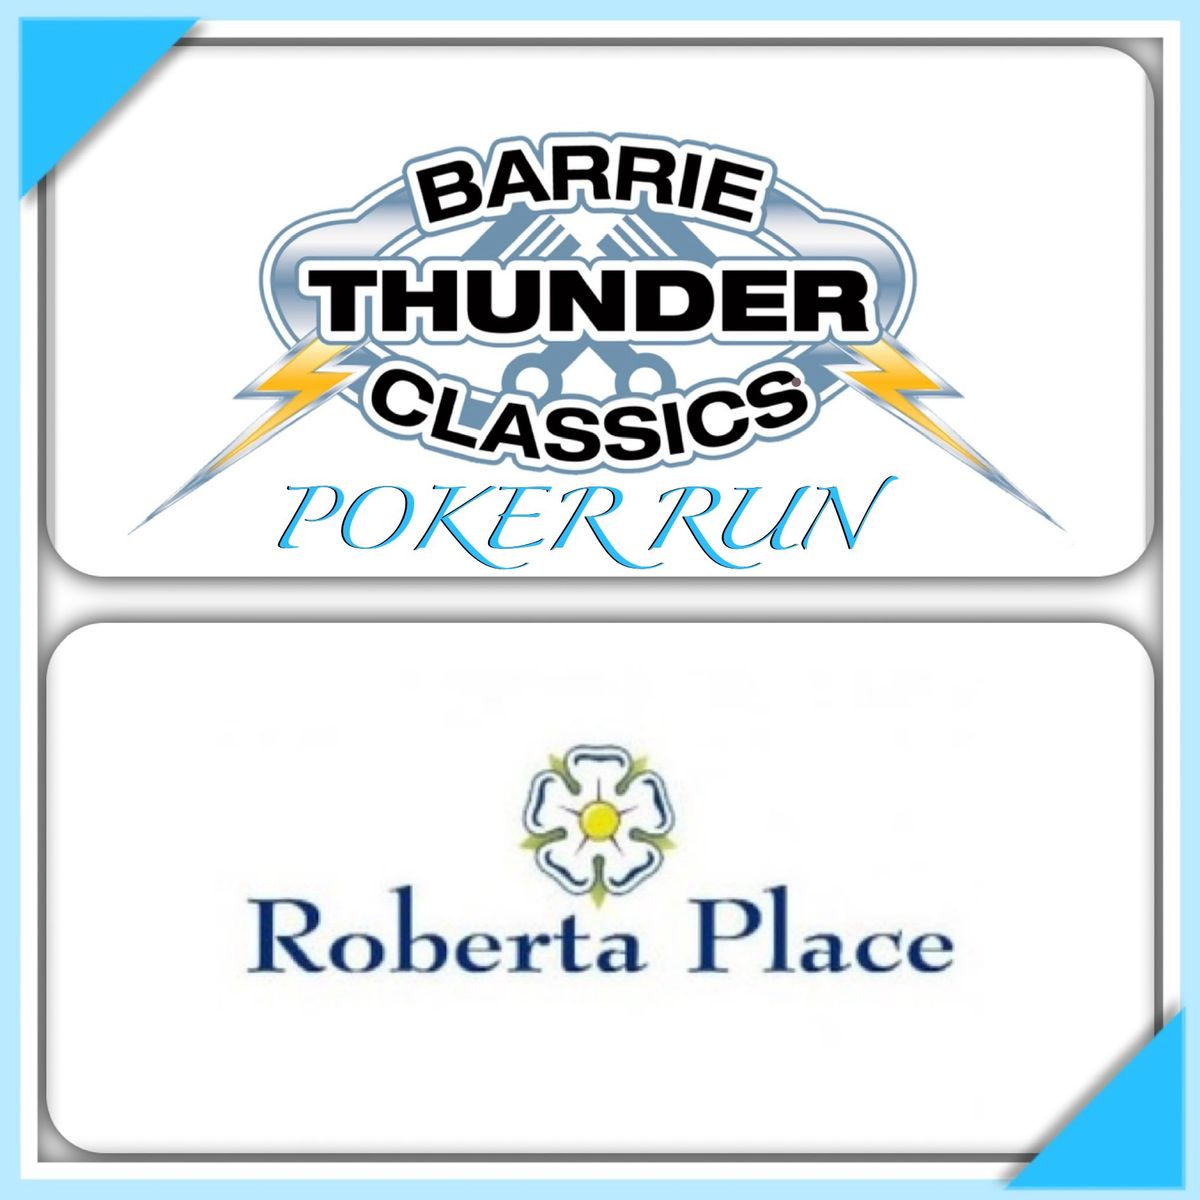 Barrie Thunder Classics Poker Run